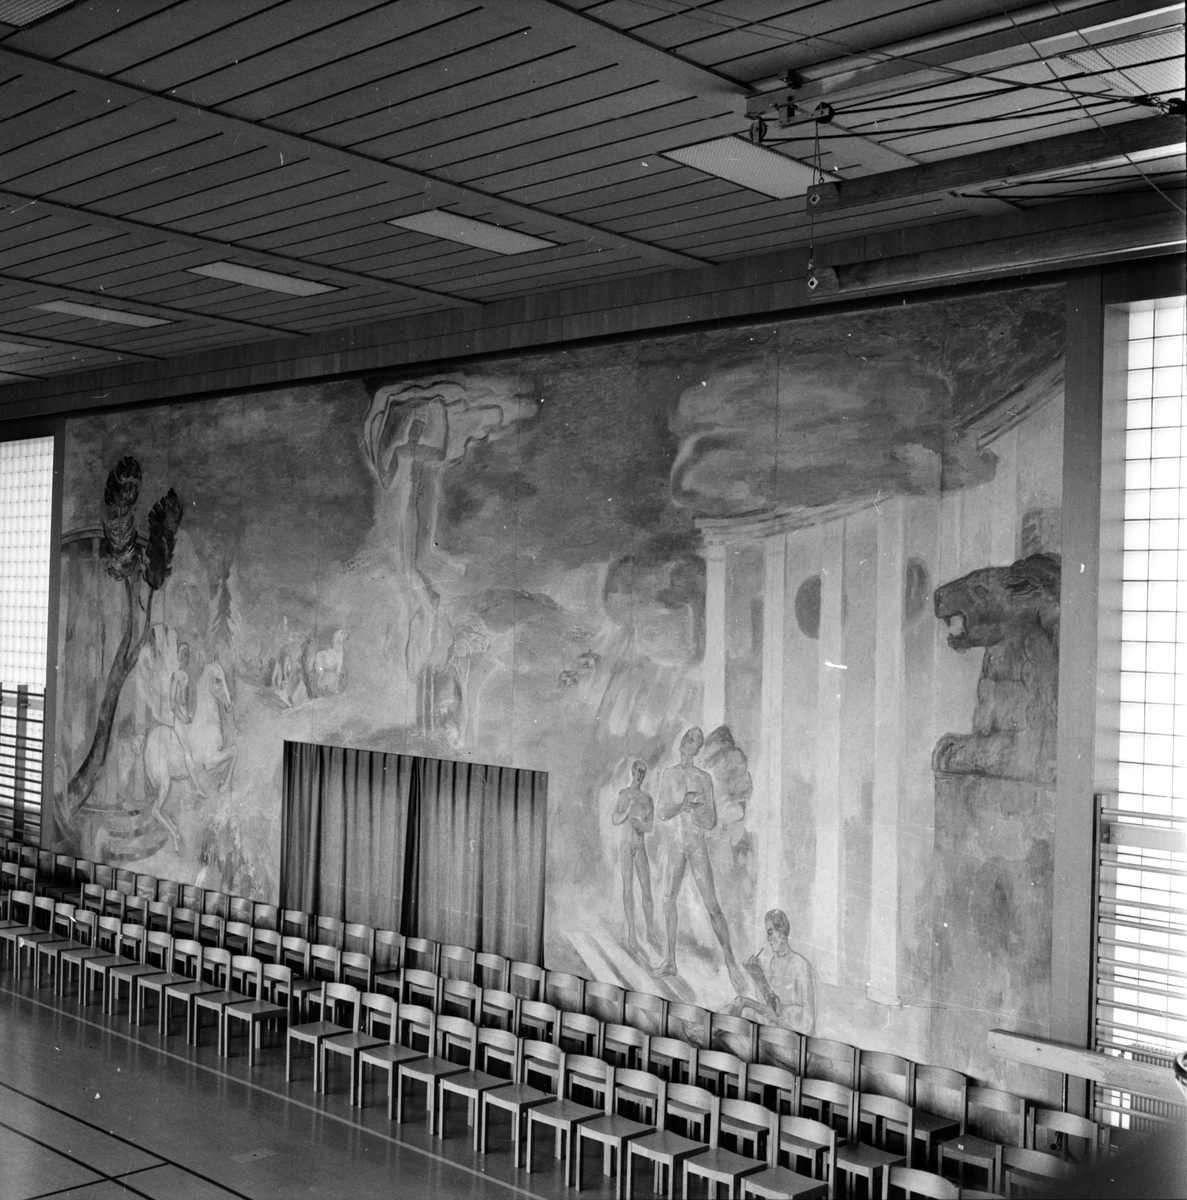 Folkhögskolan,
Avslutning,
17 Maj 1963